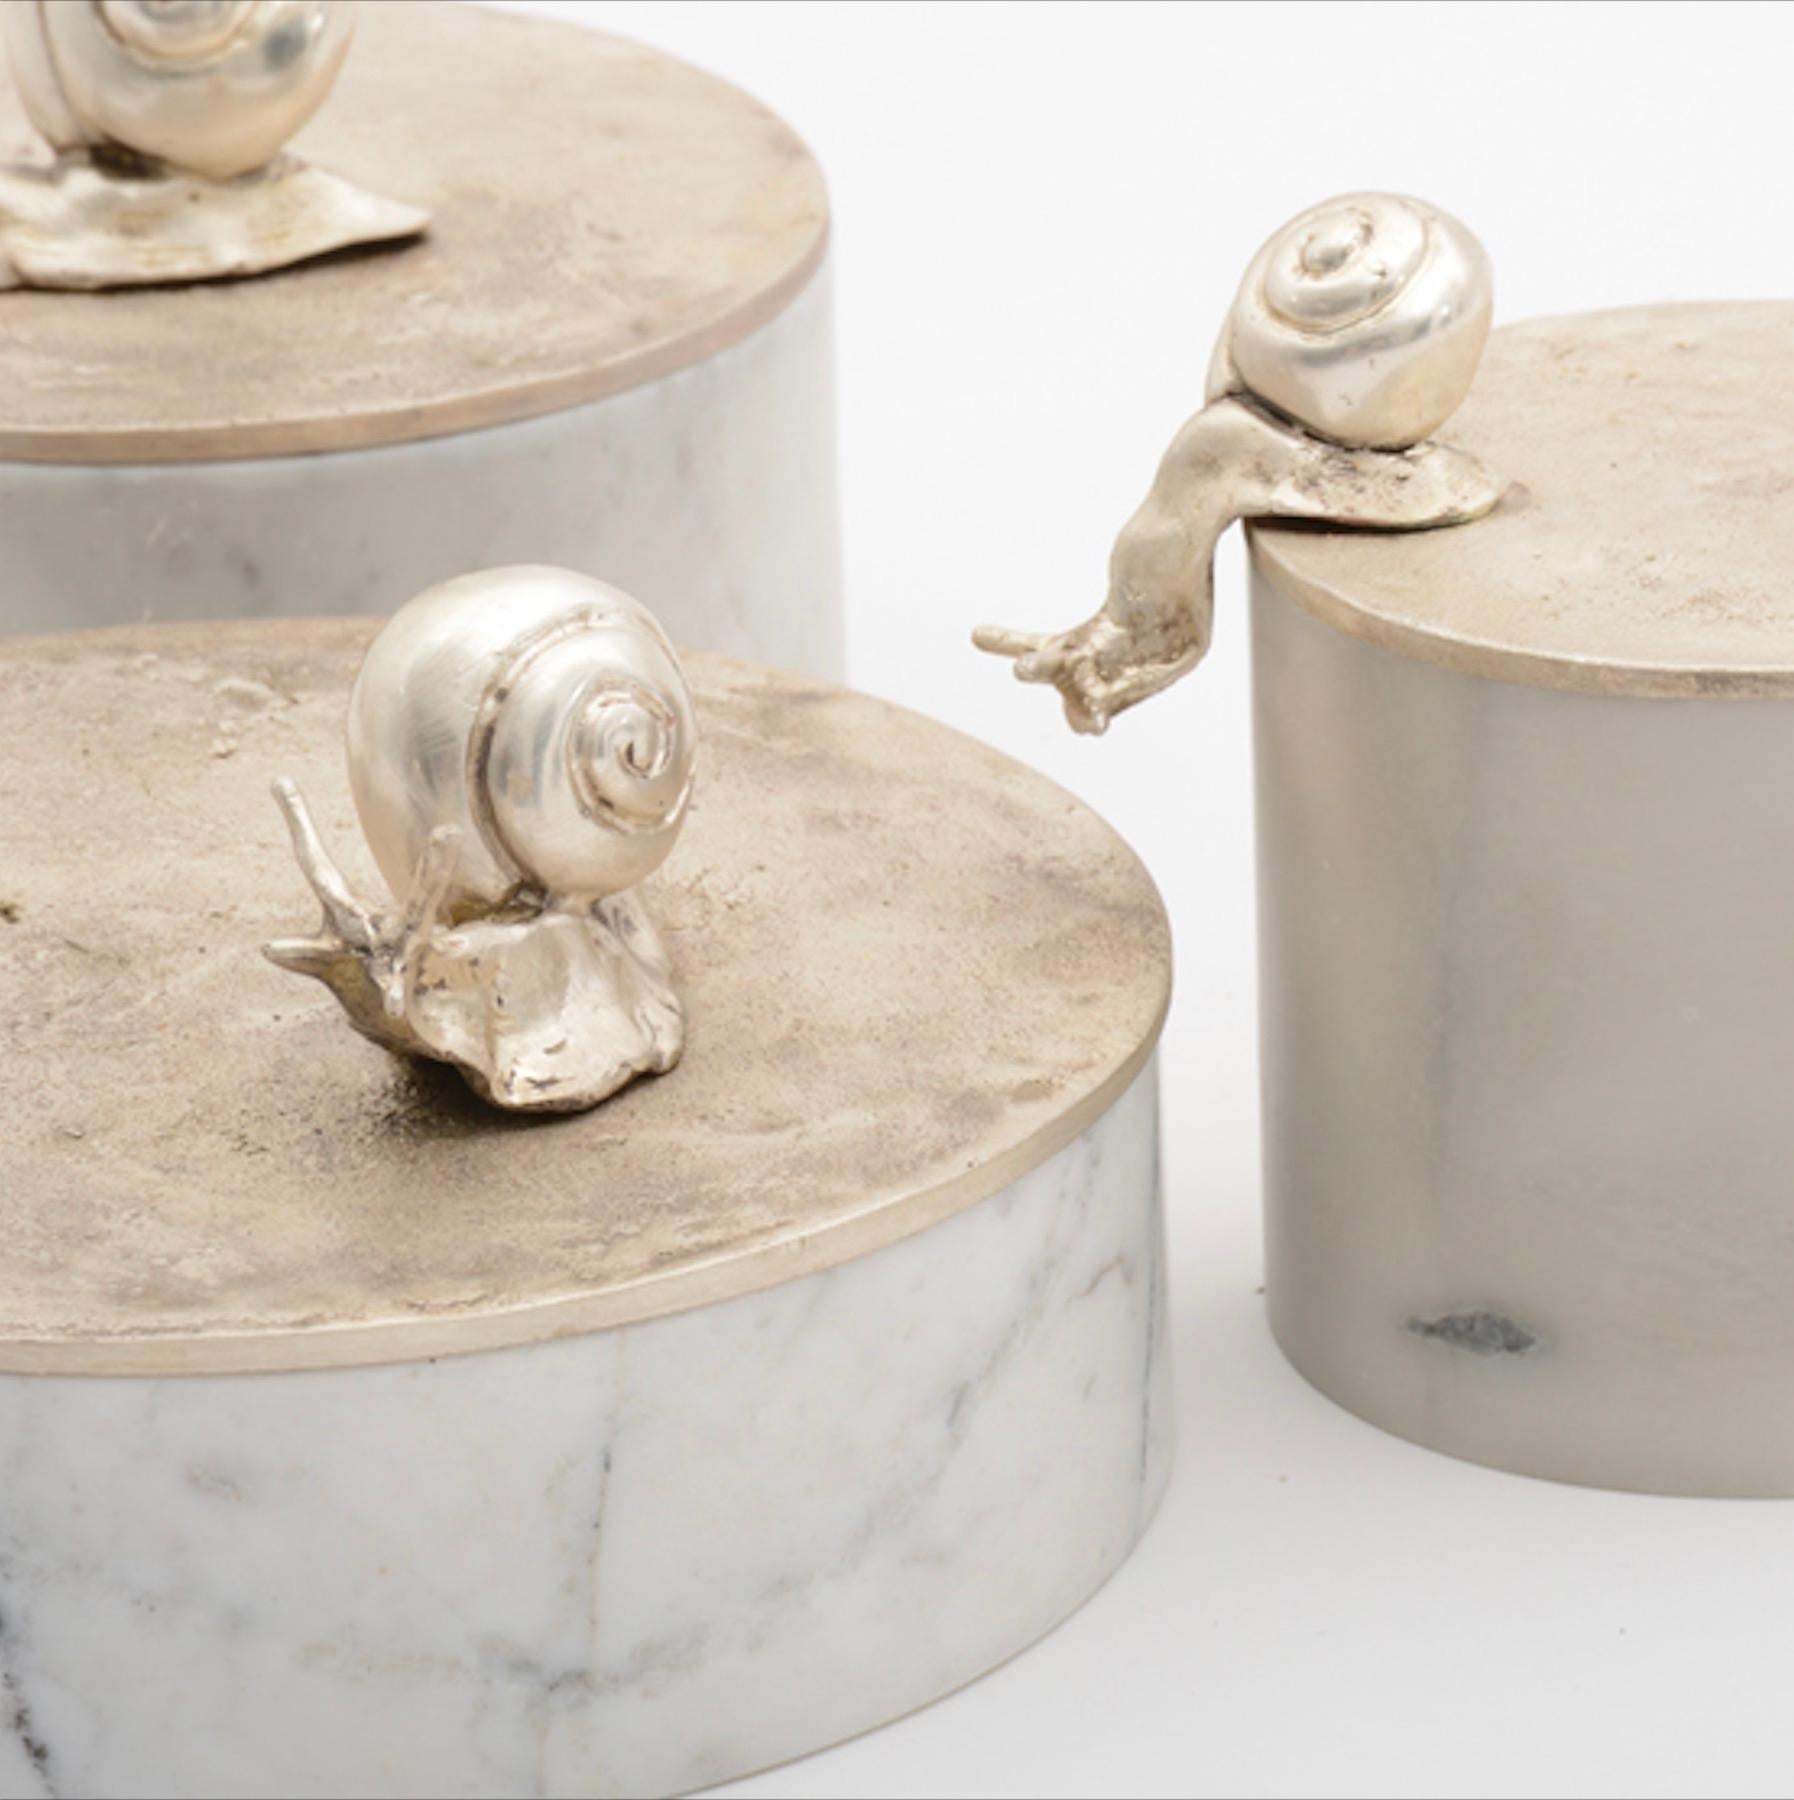 Jetzt im Elan Atelier NY Showroom erhältlich und sofort lieferbar!

Die skulpturale Caracole-Dose mit einem handgeschnitzten Sockel aus weißem Marmor und einem Deckel aus mattsilberner Bronze mit zwei Schnecken. Eine elegante Videopoche oder